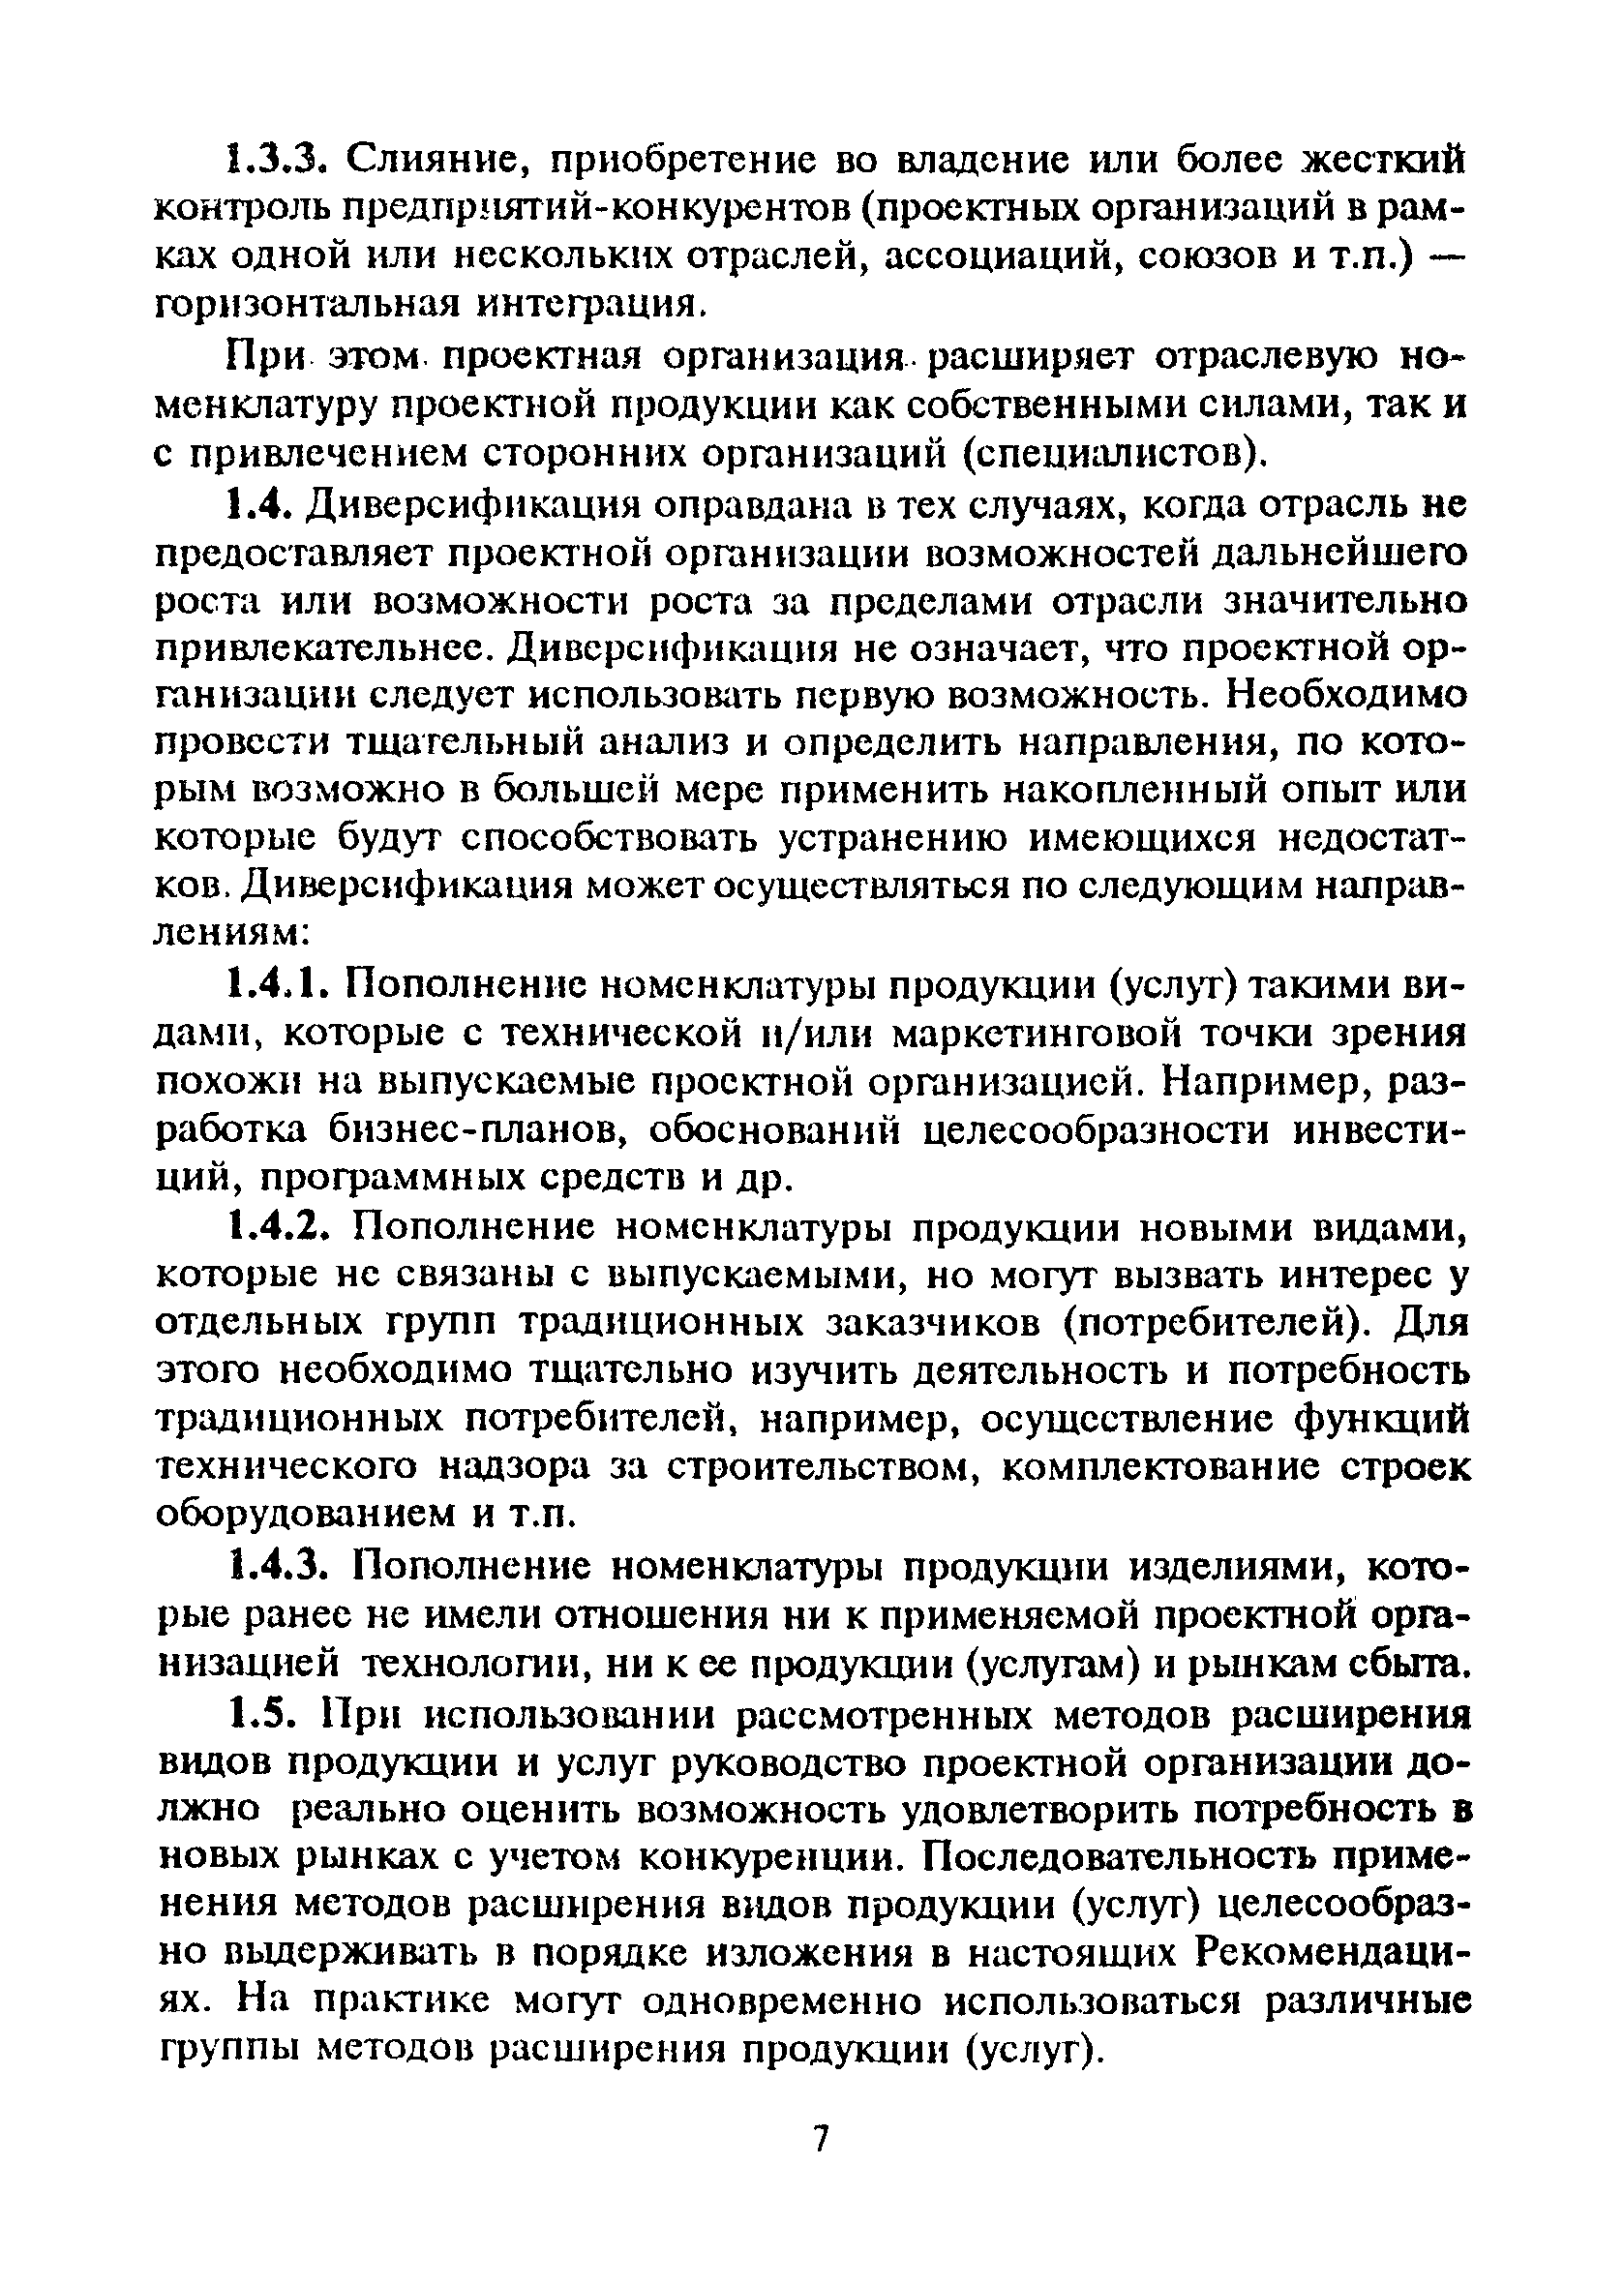 МДС 11-13.2000